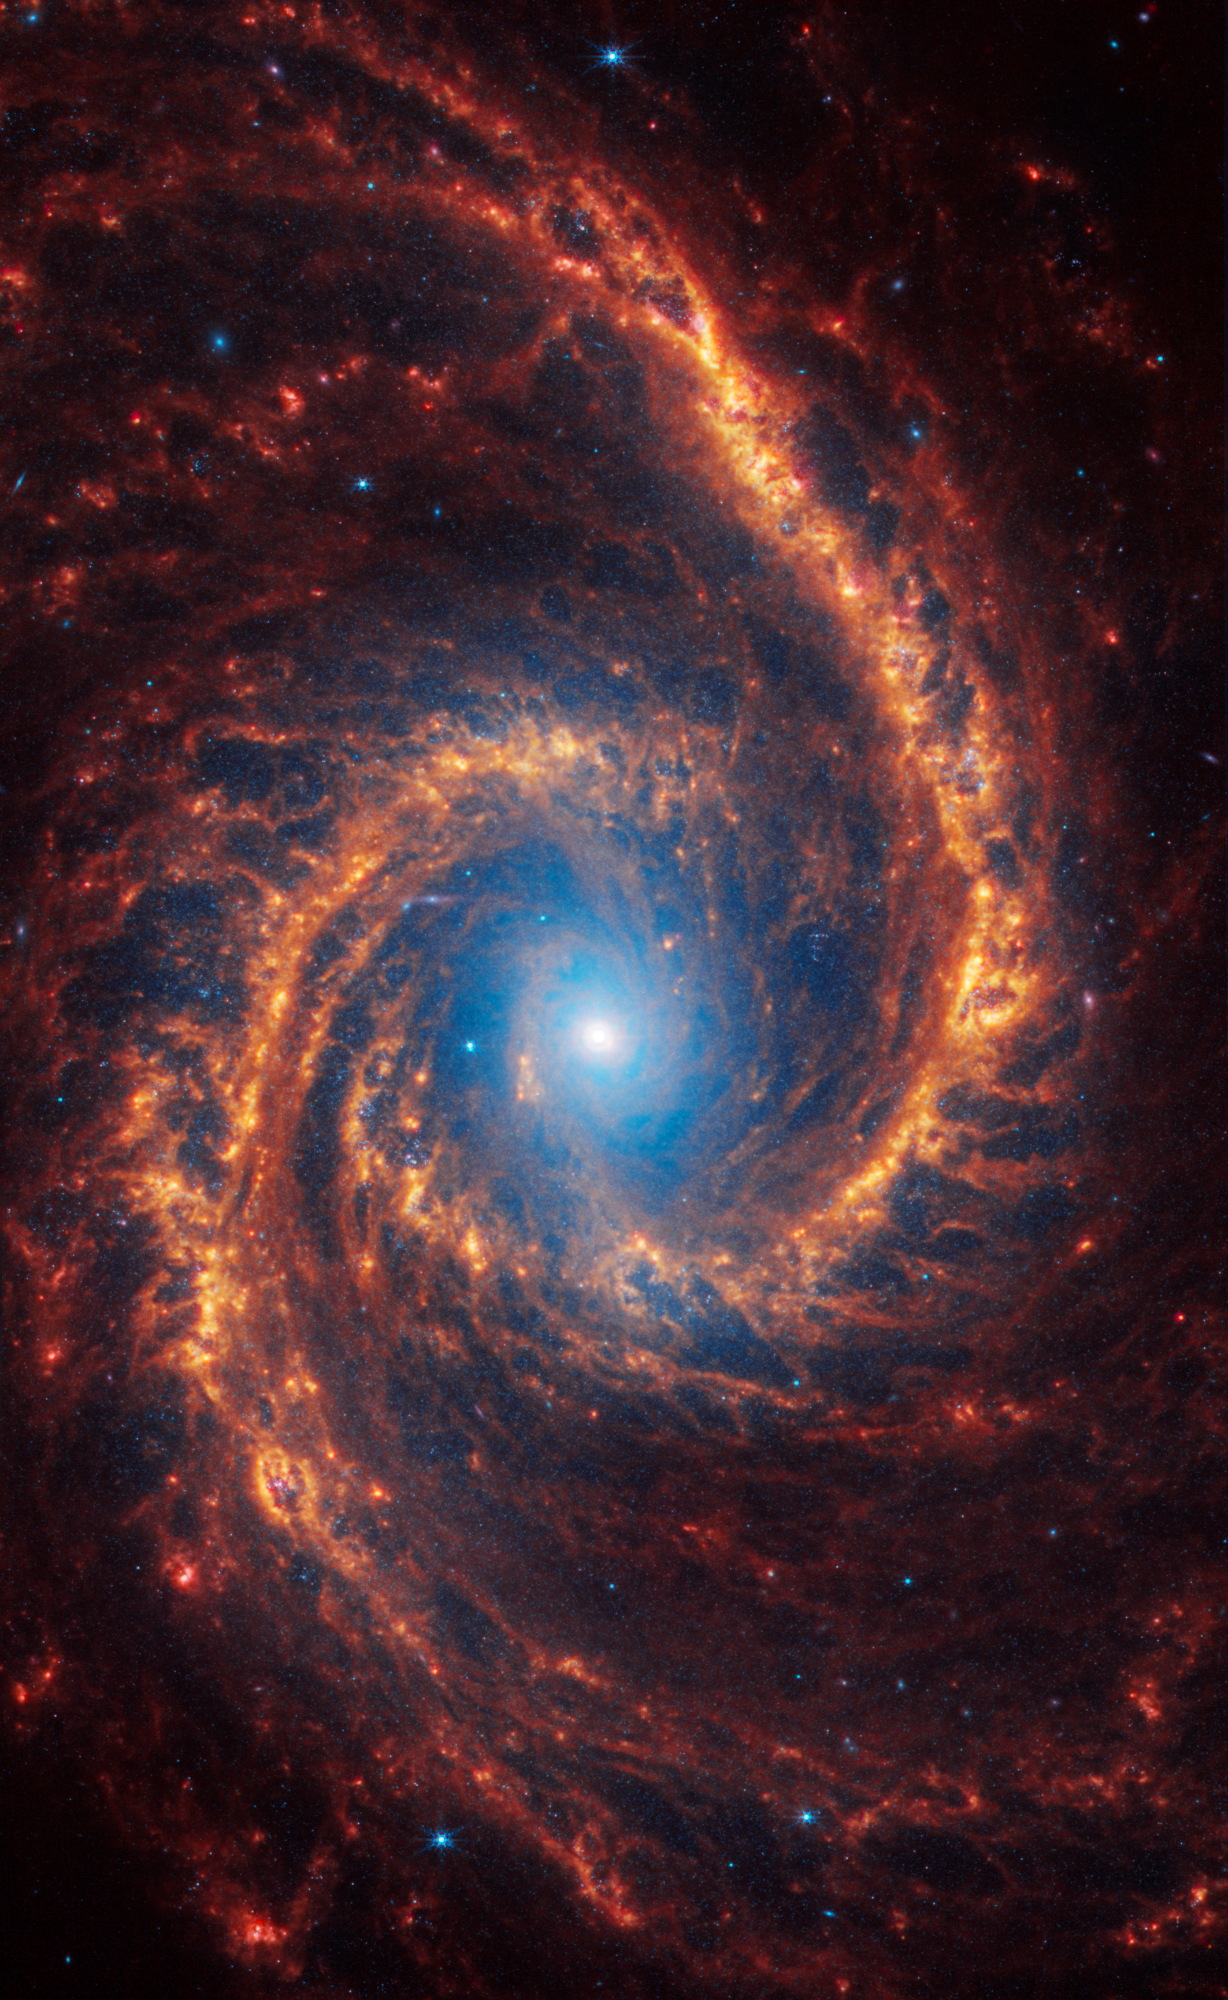 La galaxia espiral NGC 1566, situada a 60 millones de años luz en la constelación de Dorado, se muestra en todo su esplendor, ilustrando los detalles complejos y la simetría de sus brazos espirales.